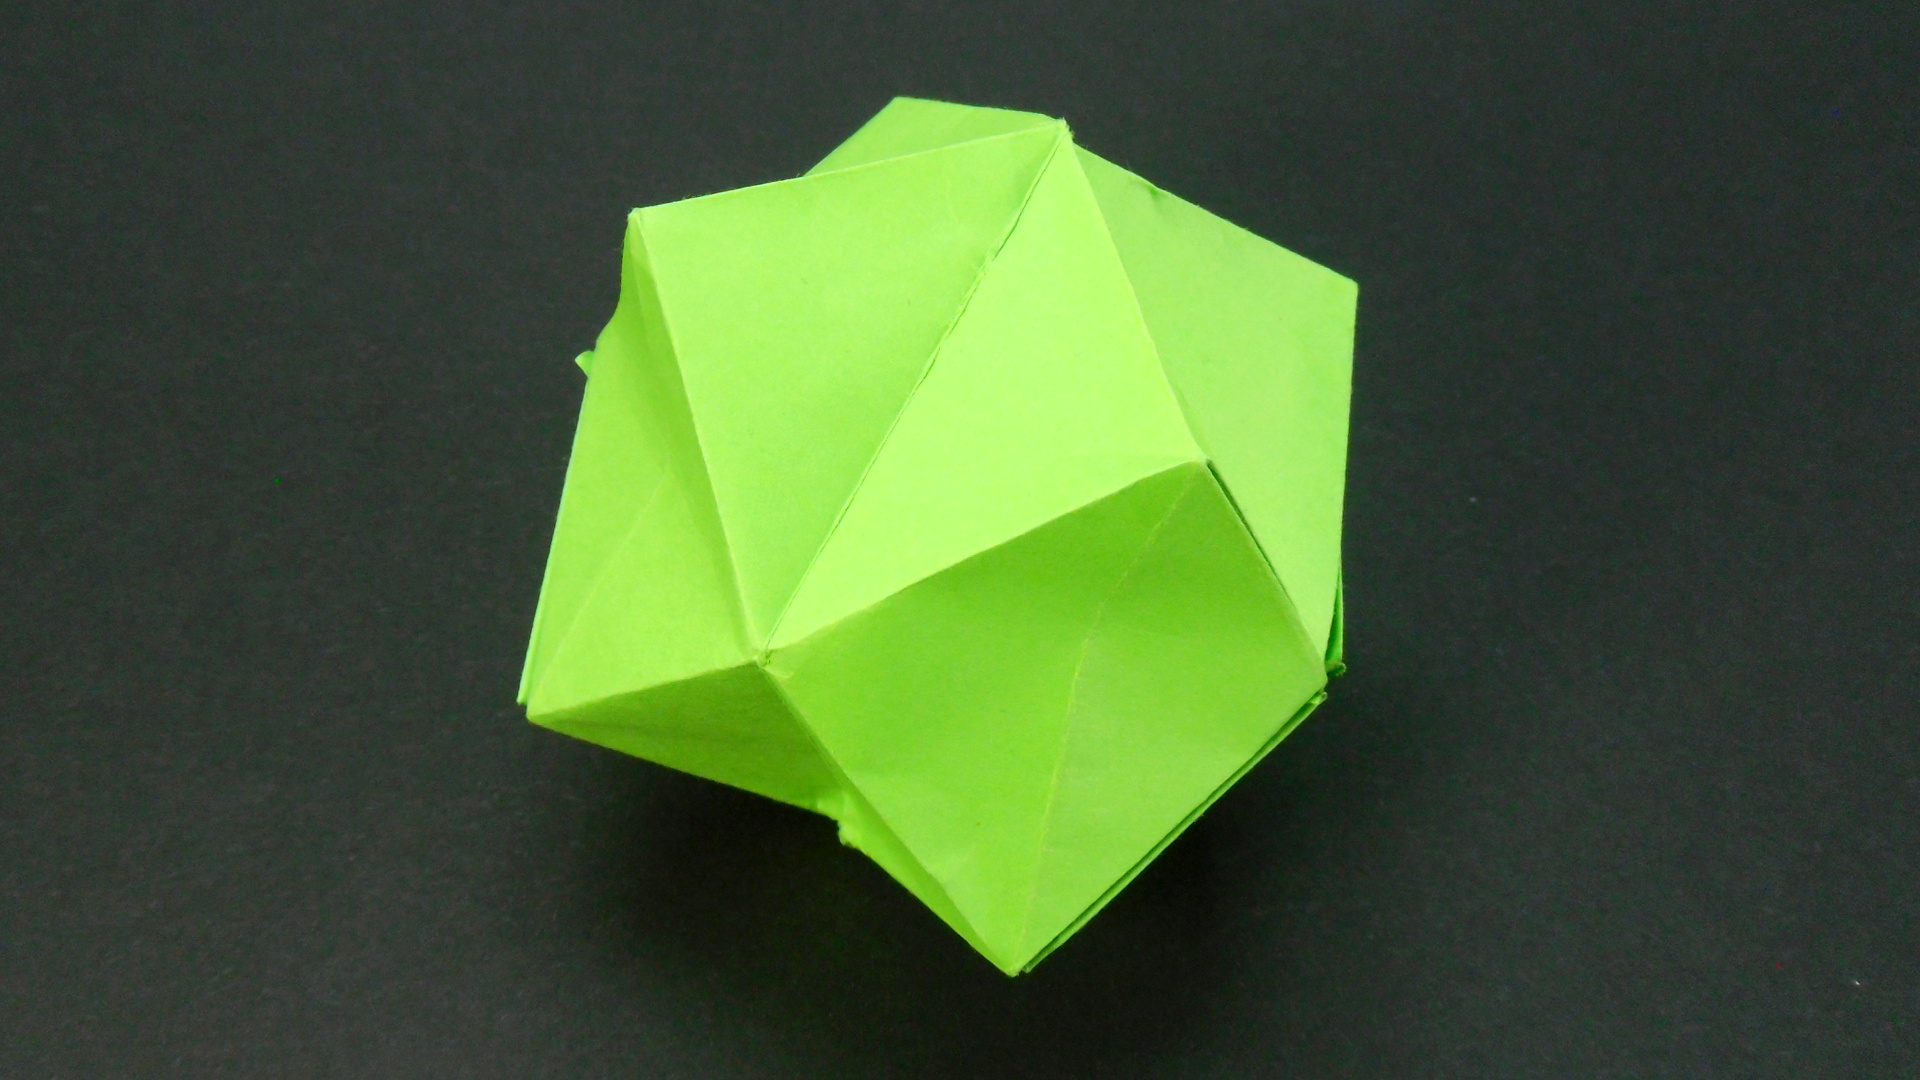 Как сделать Звездчатый Октаэдр из бумаги | Оригами Октаэдр своими руками | Объемный Многогранник